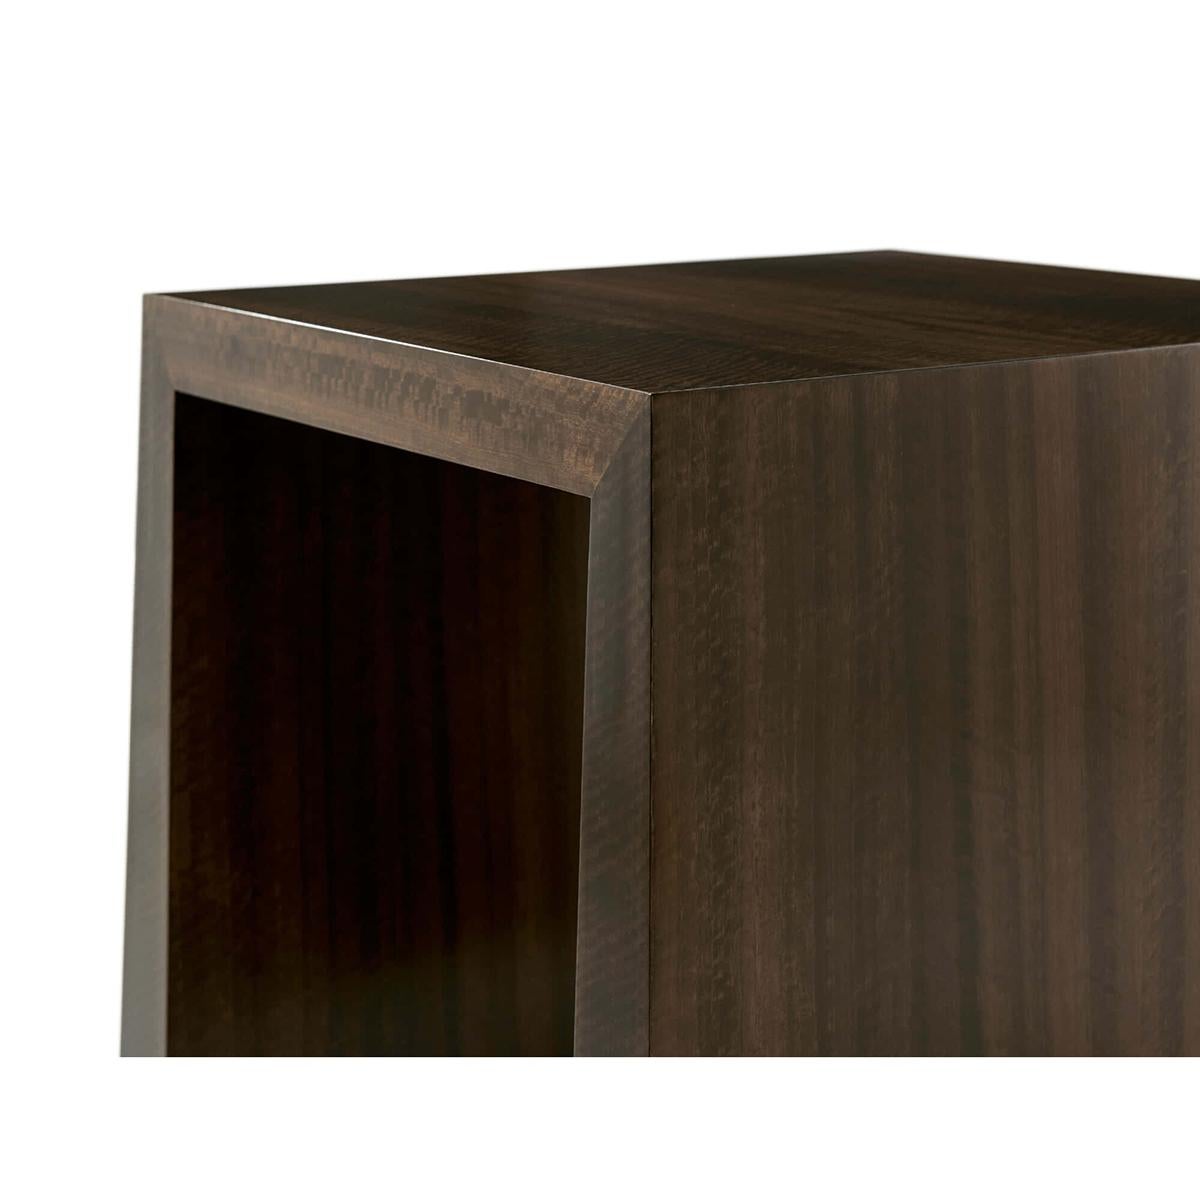 Table d'appoint de style Mid Century avec des placages d'eucalyptus, une base chanfreinée avec des détails en laiton dans notre finition Fumed Eucalyptus.

Dimensions : 24